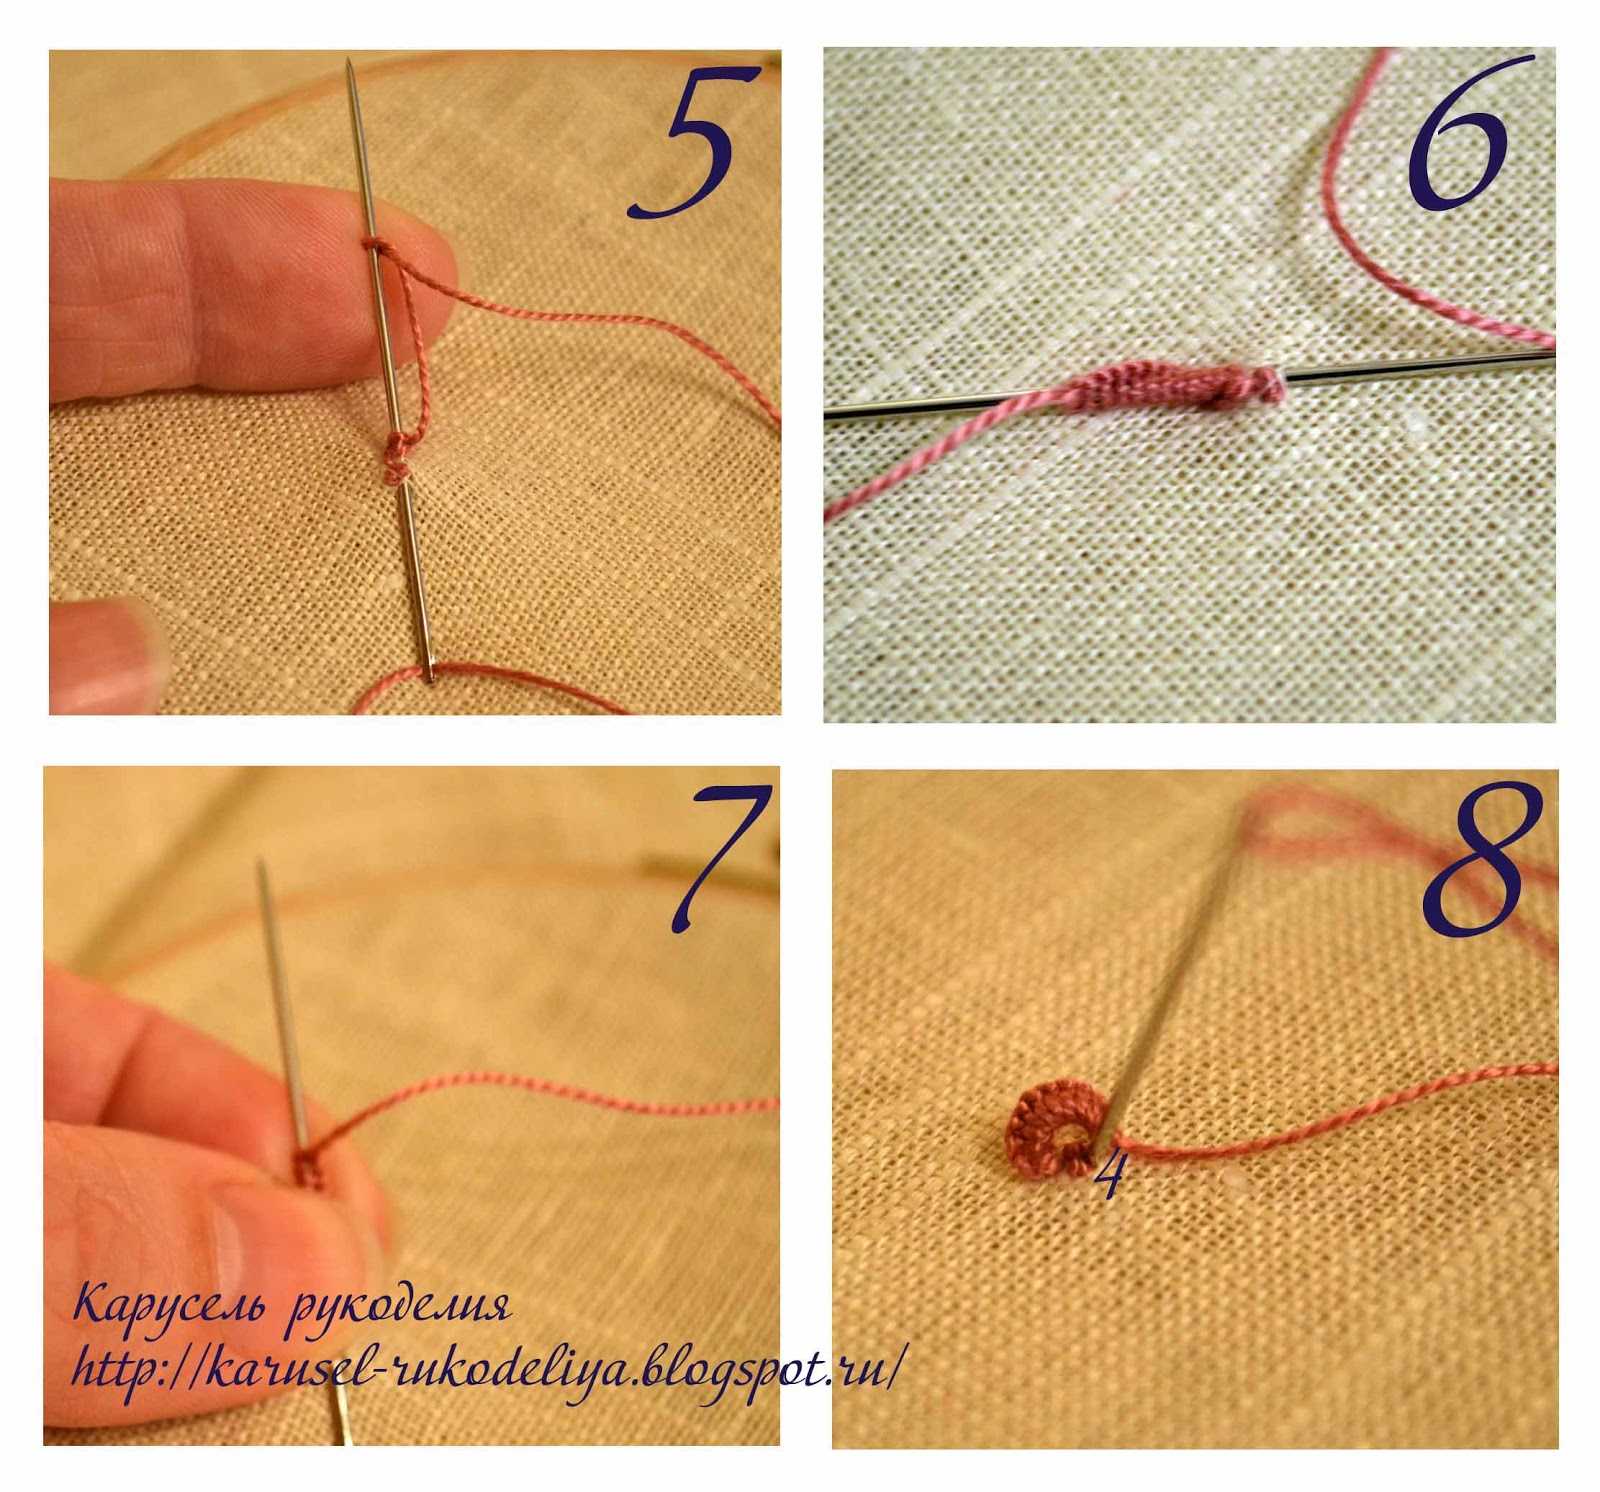 Как сделать петельки на шторы вручную, из ниток иголкой, петли для крючков